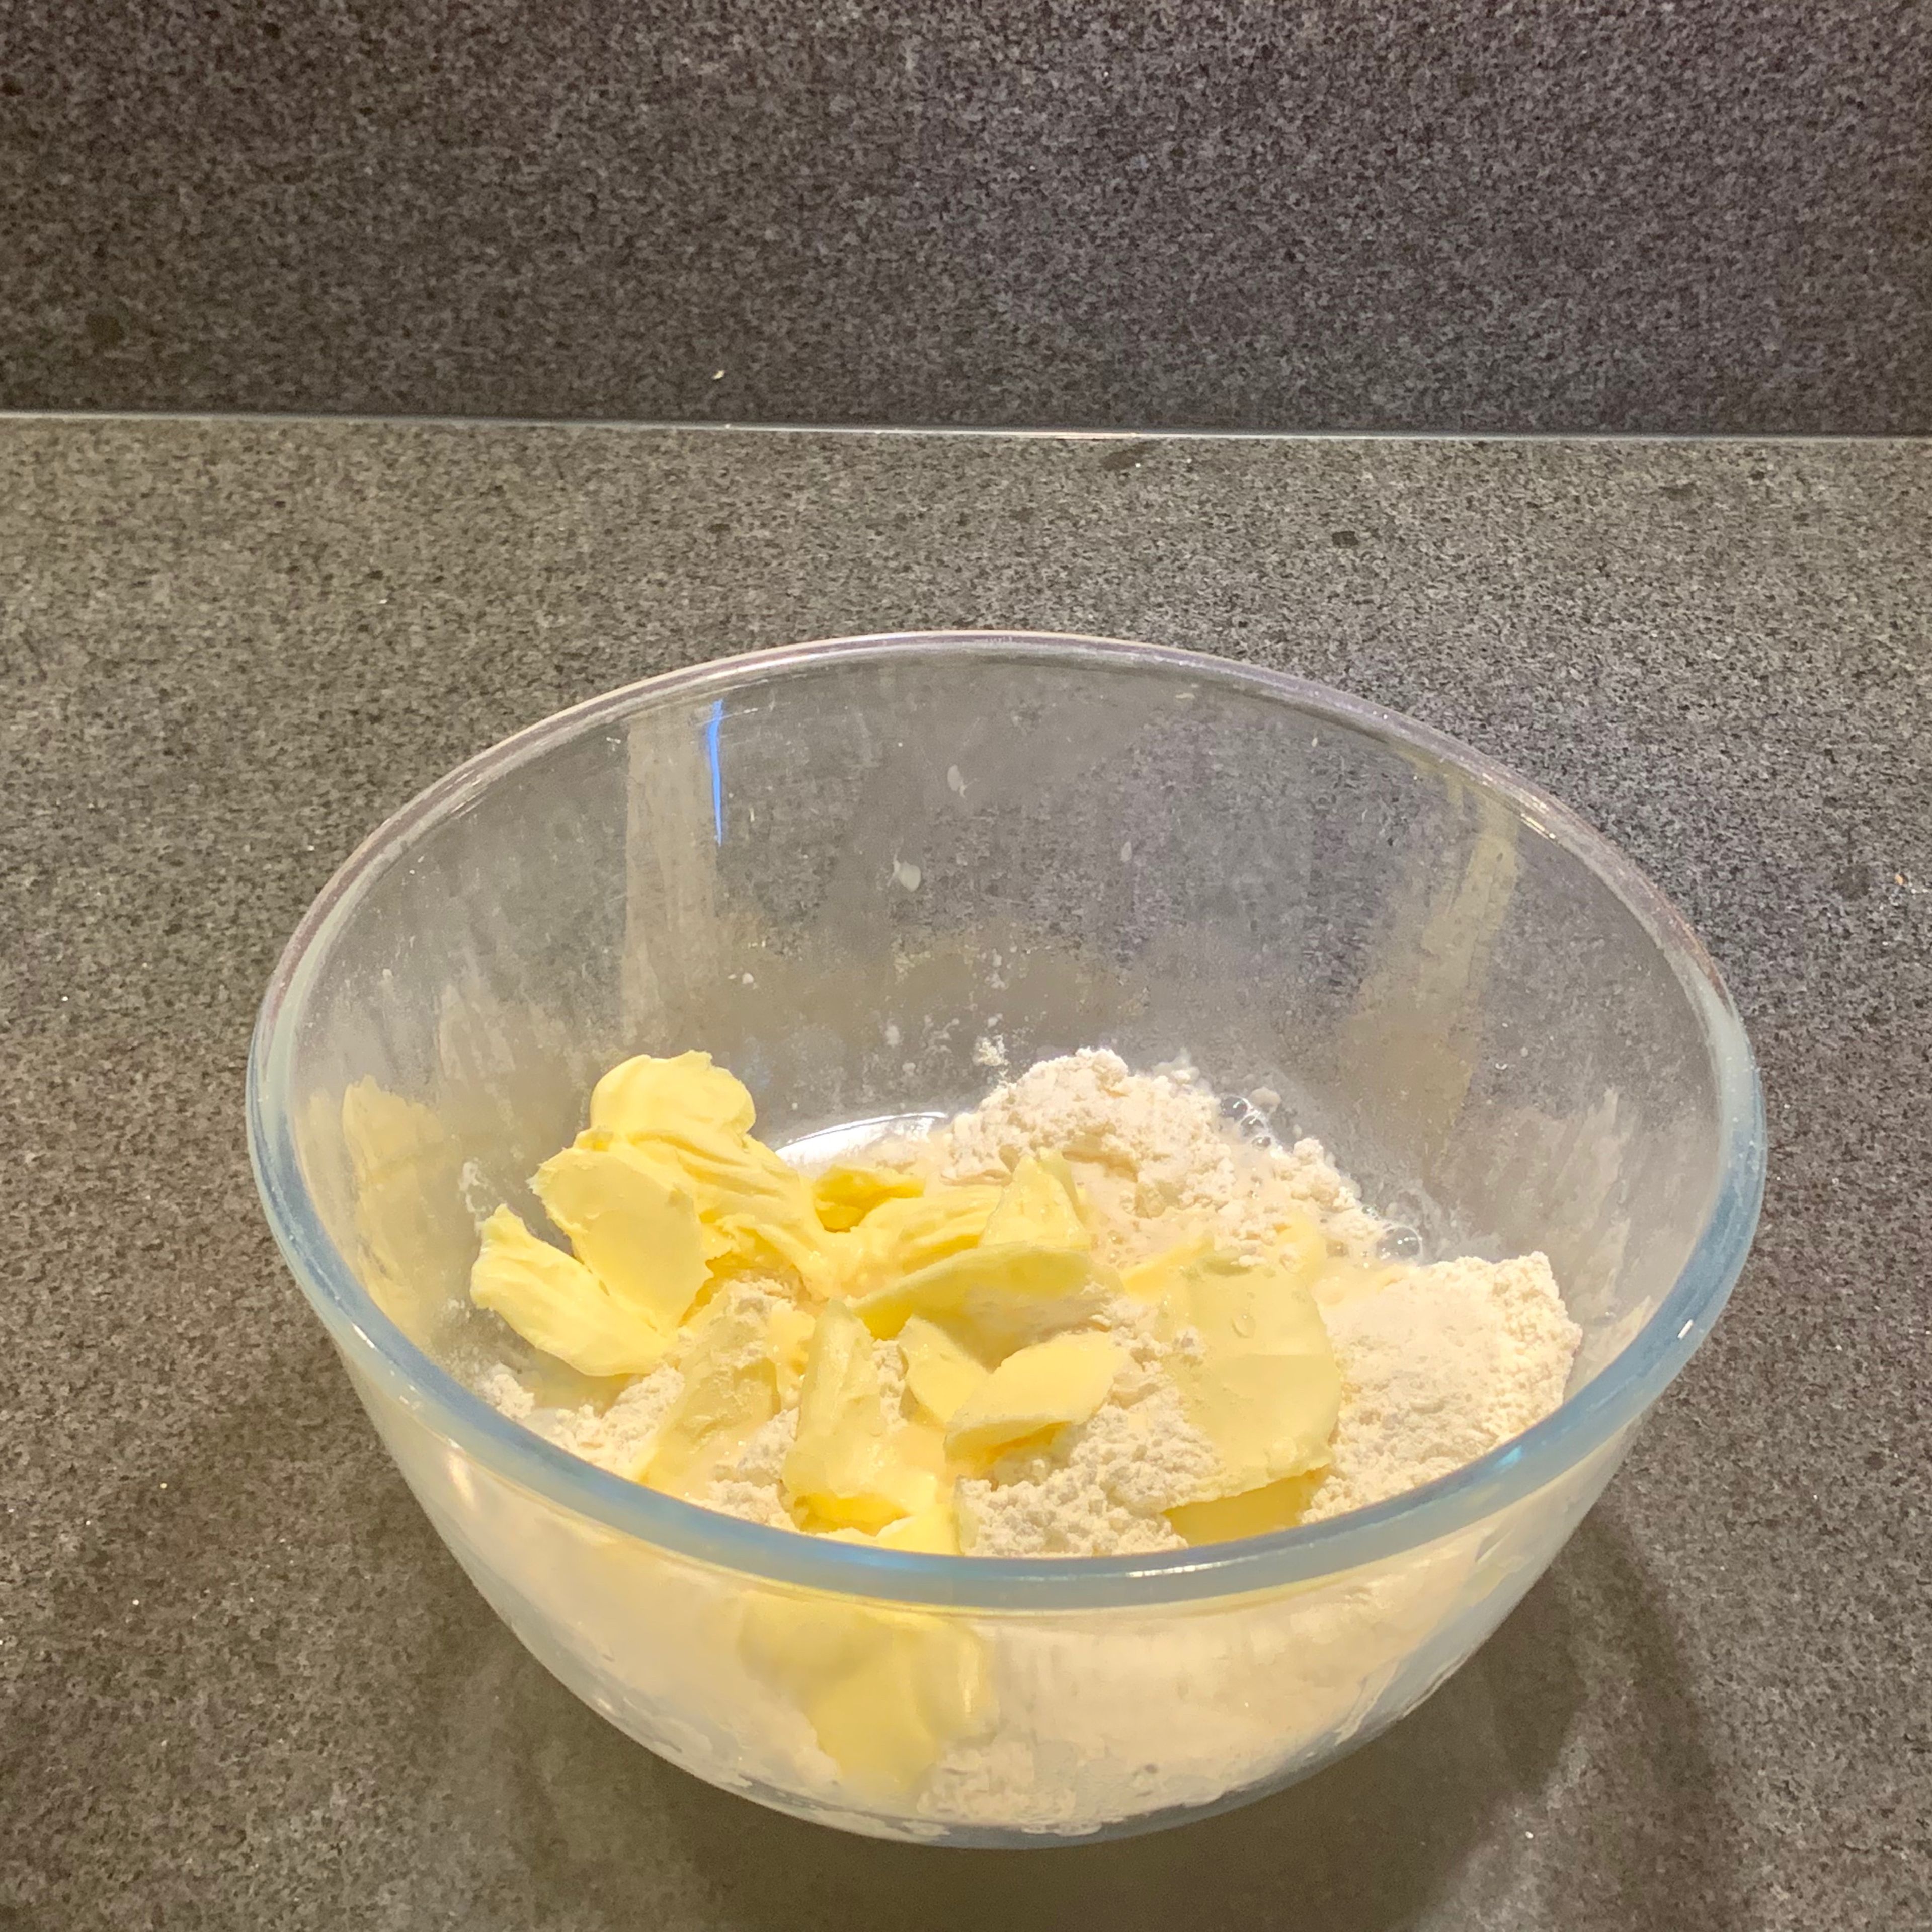 Das Mehl, die Butter in Flocken, Salz und das Wasser zuerst etwas zusammendrücken, dann kneten und so zu einem Teig verarbeiten. Allerdings nicht längere Zeit kneten.